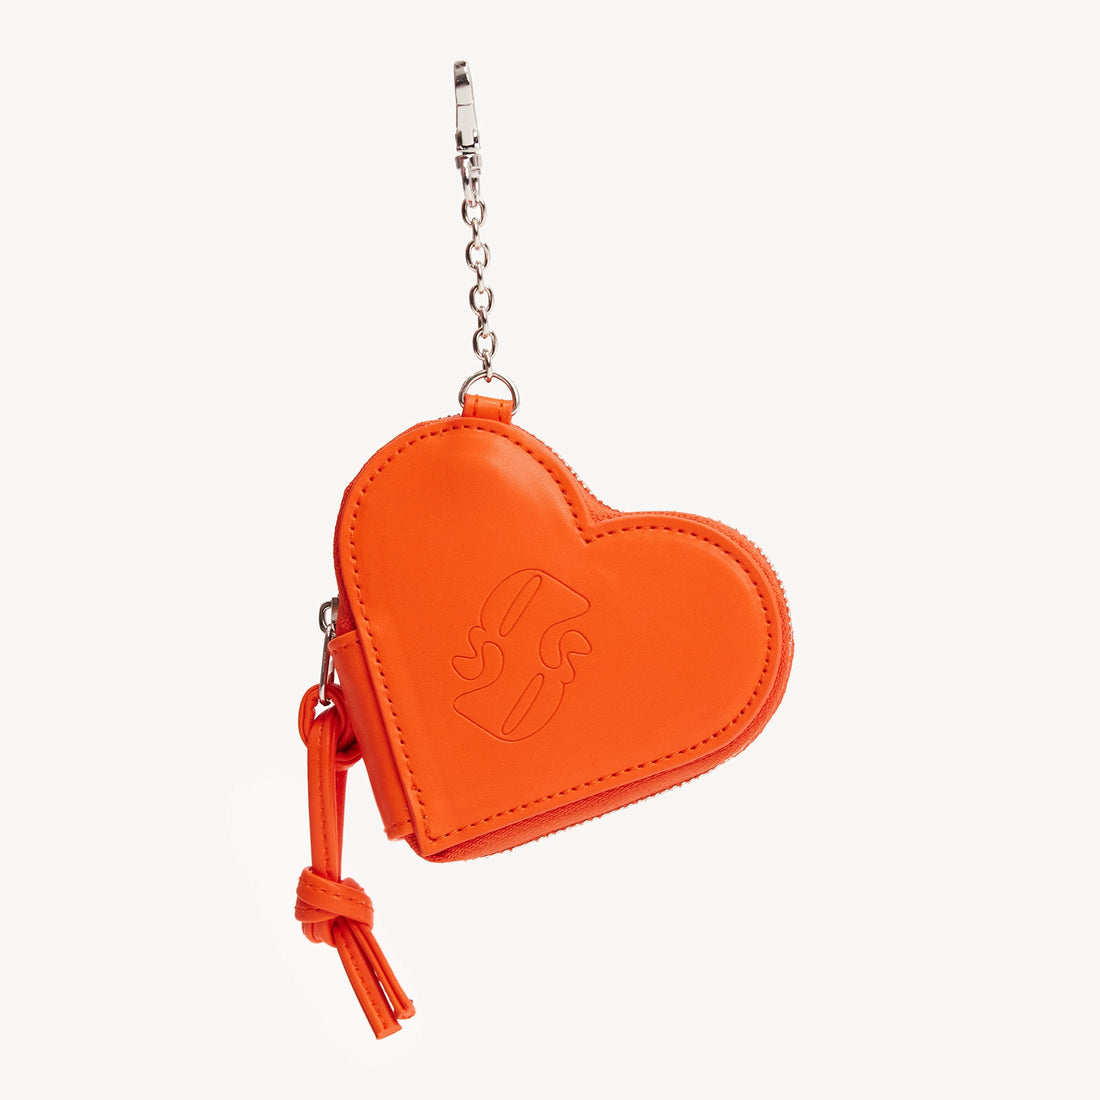 Poop Bag Holder Heart - Orange